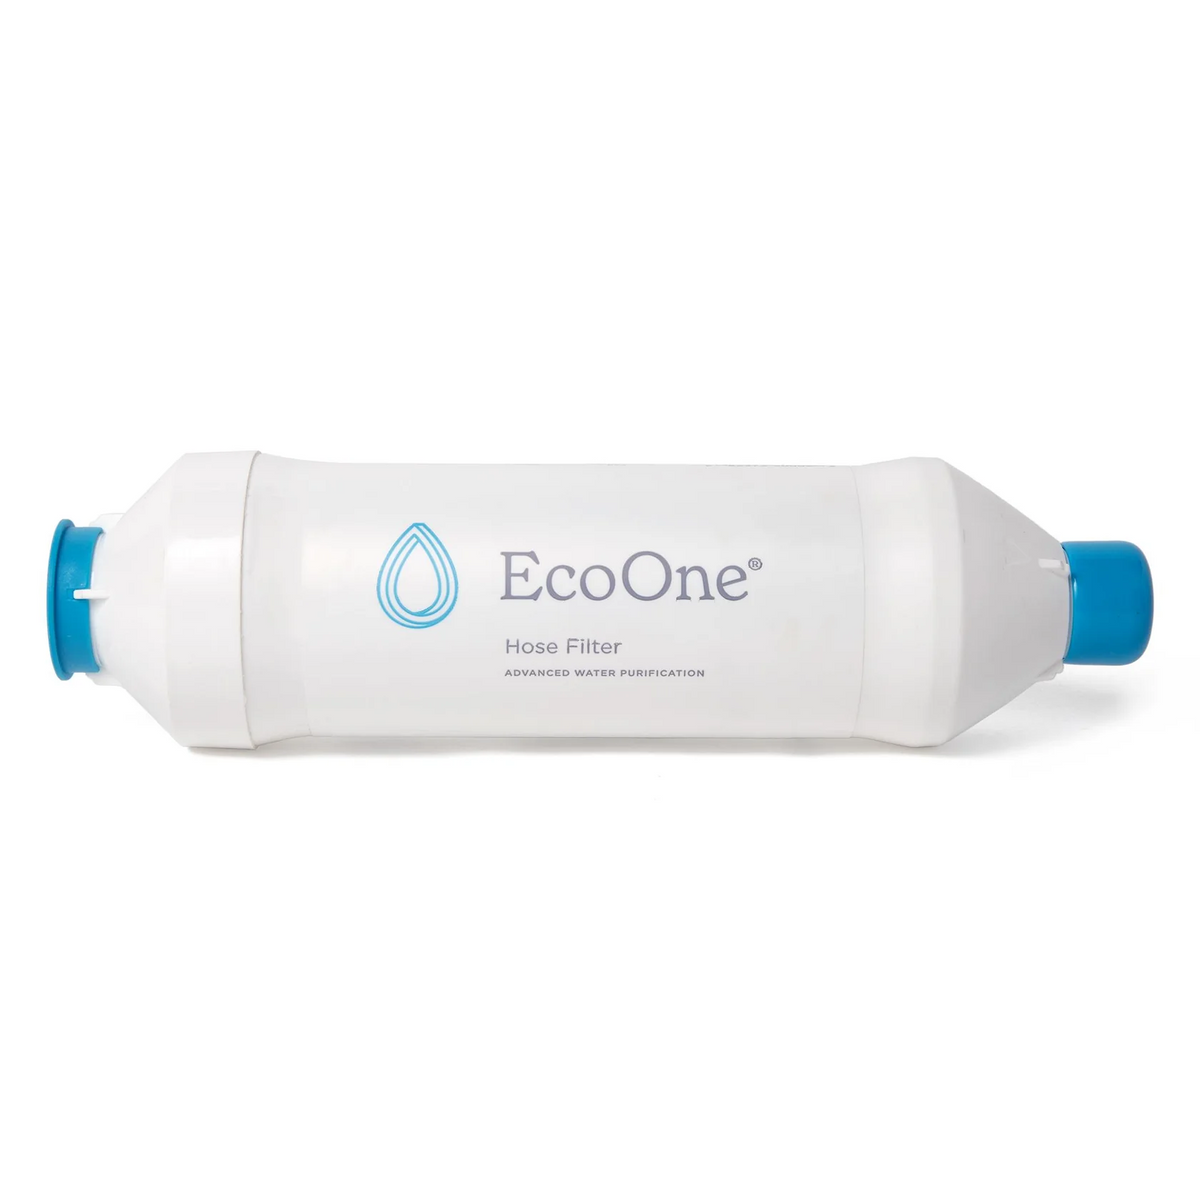 EcoOne Hose Filter